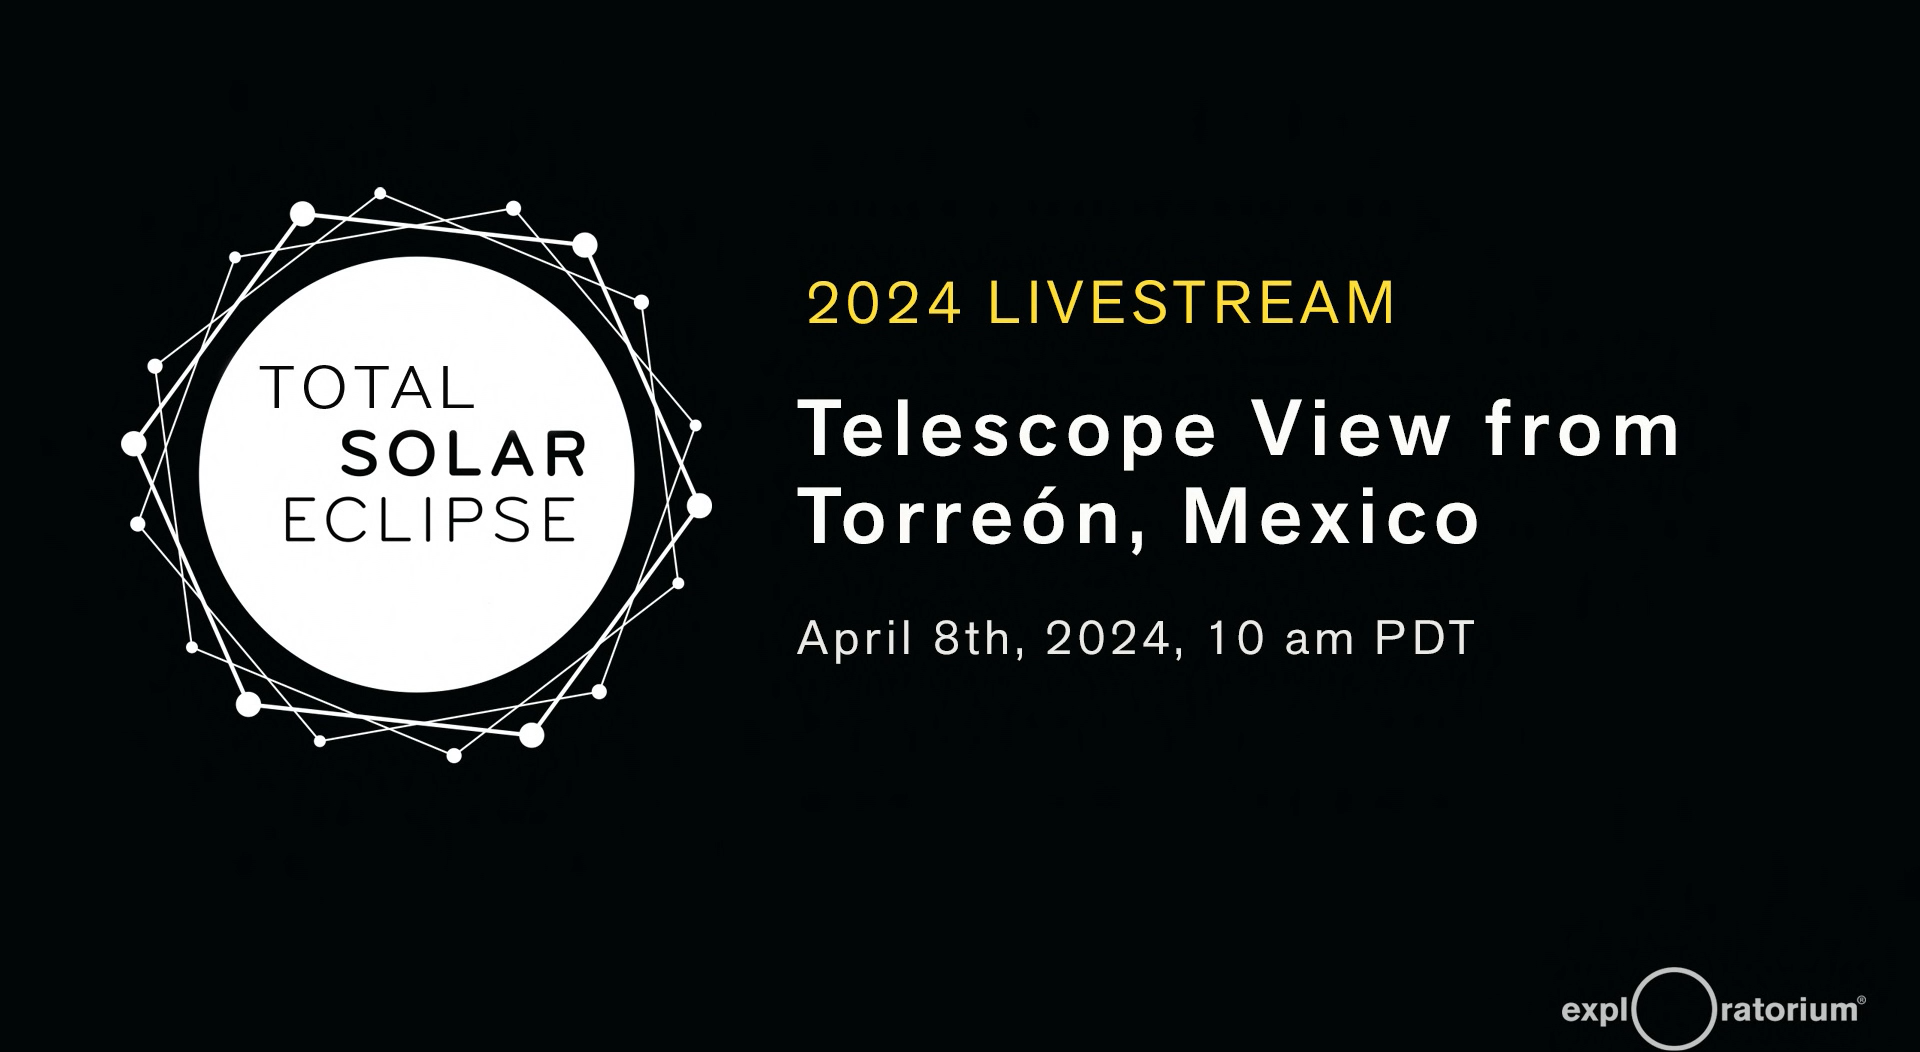 2024 solar eclipse livestream title slide from Exploratorium